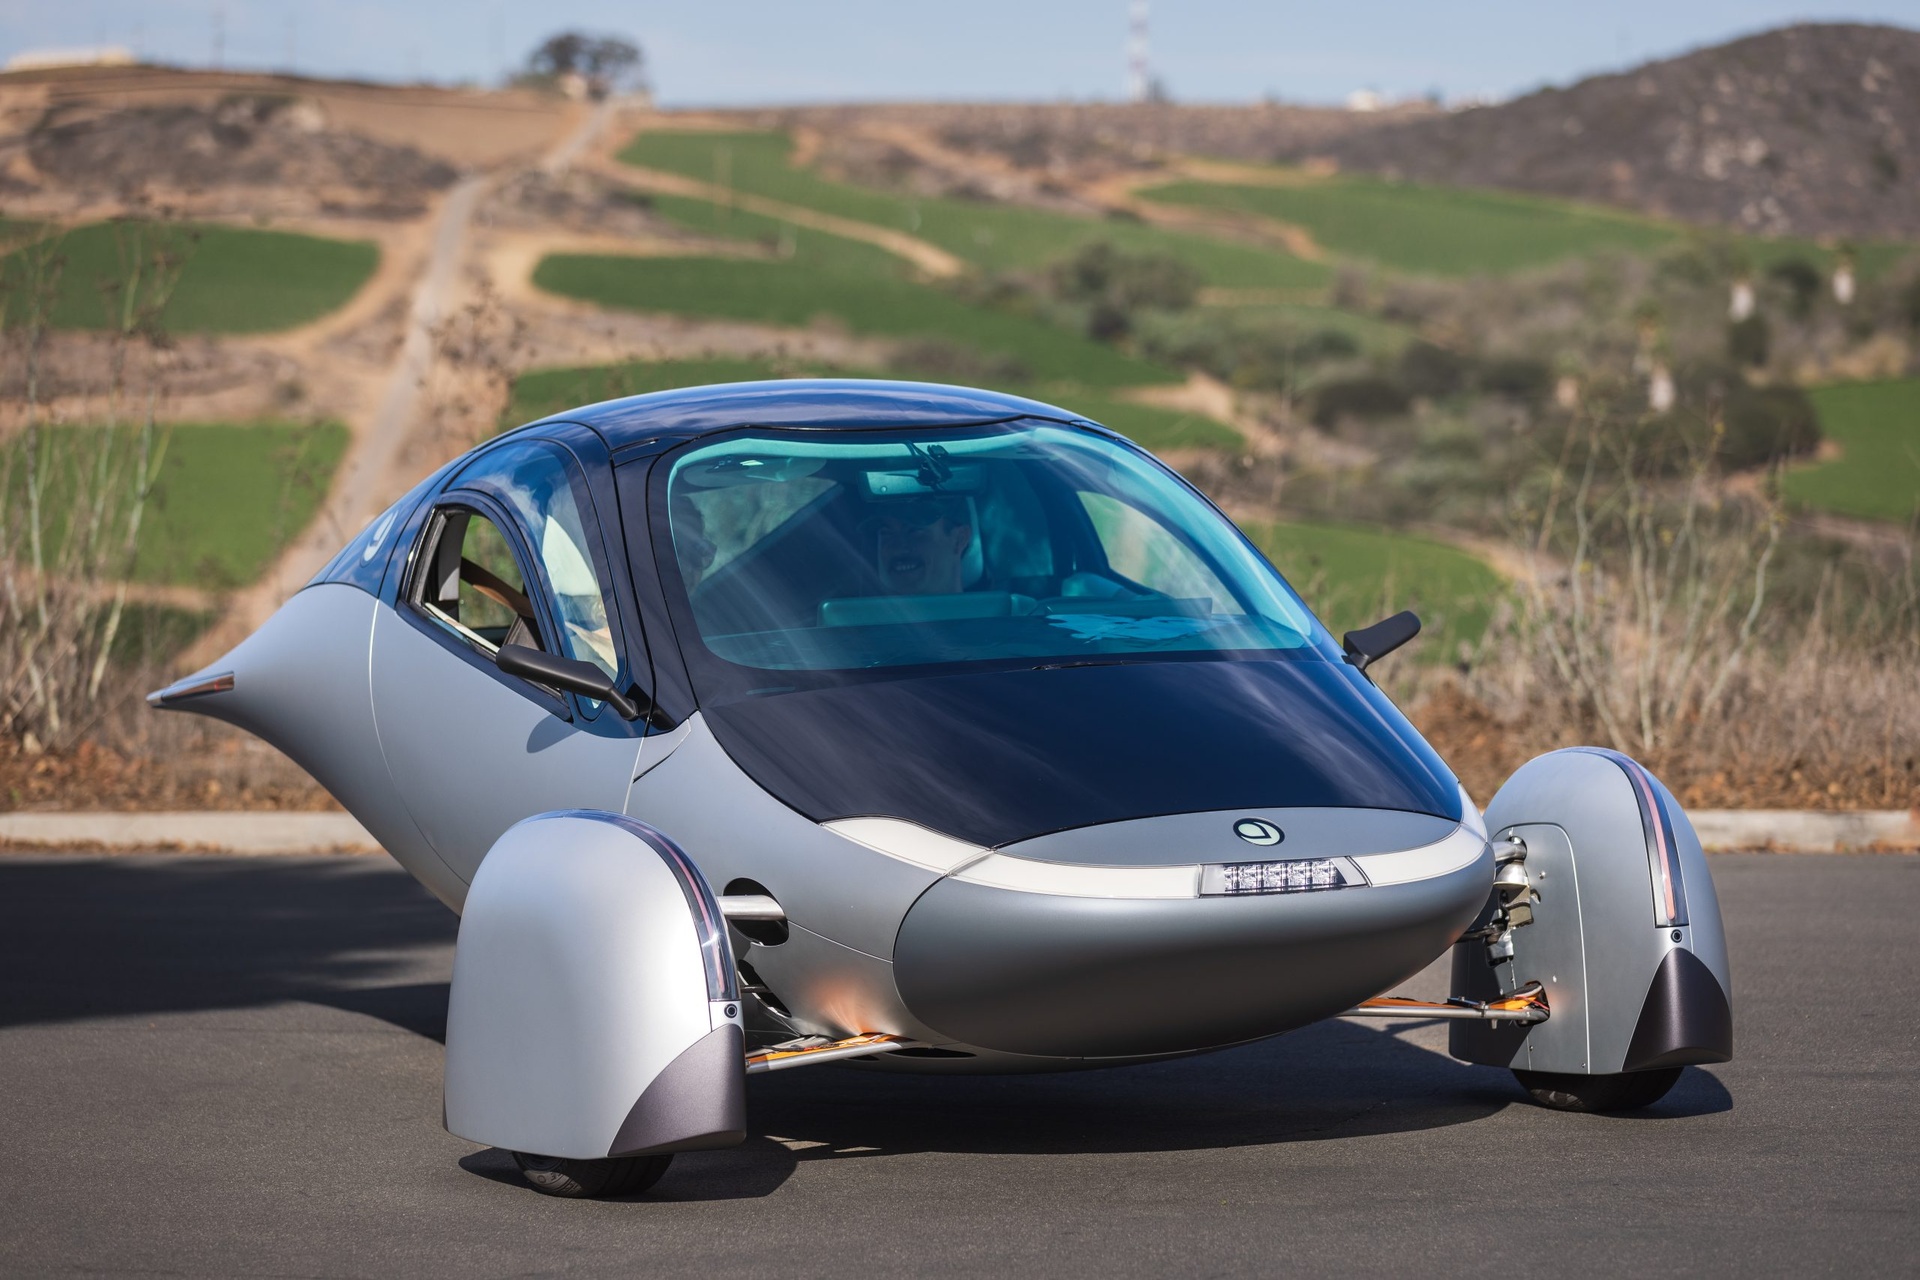 Ηλιακό αυτοκίνητο: το Aptera Delta είναι το πιο βιώσιμο αυτοκίνητο στον κόσμο, με αυτονομία 1600 km με μπαταρία και 70 km με ηλιακή ενέργεια